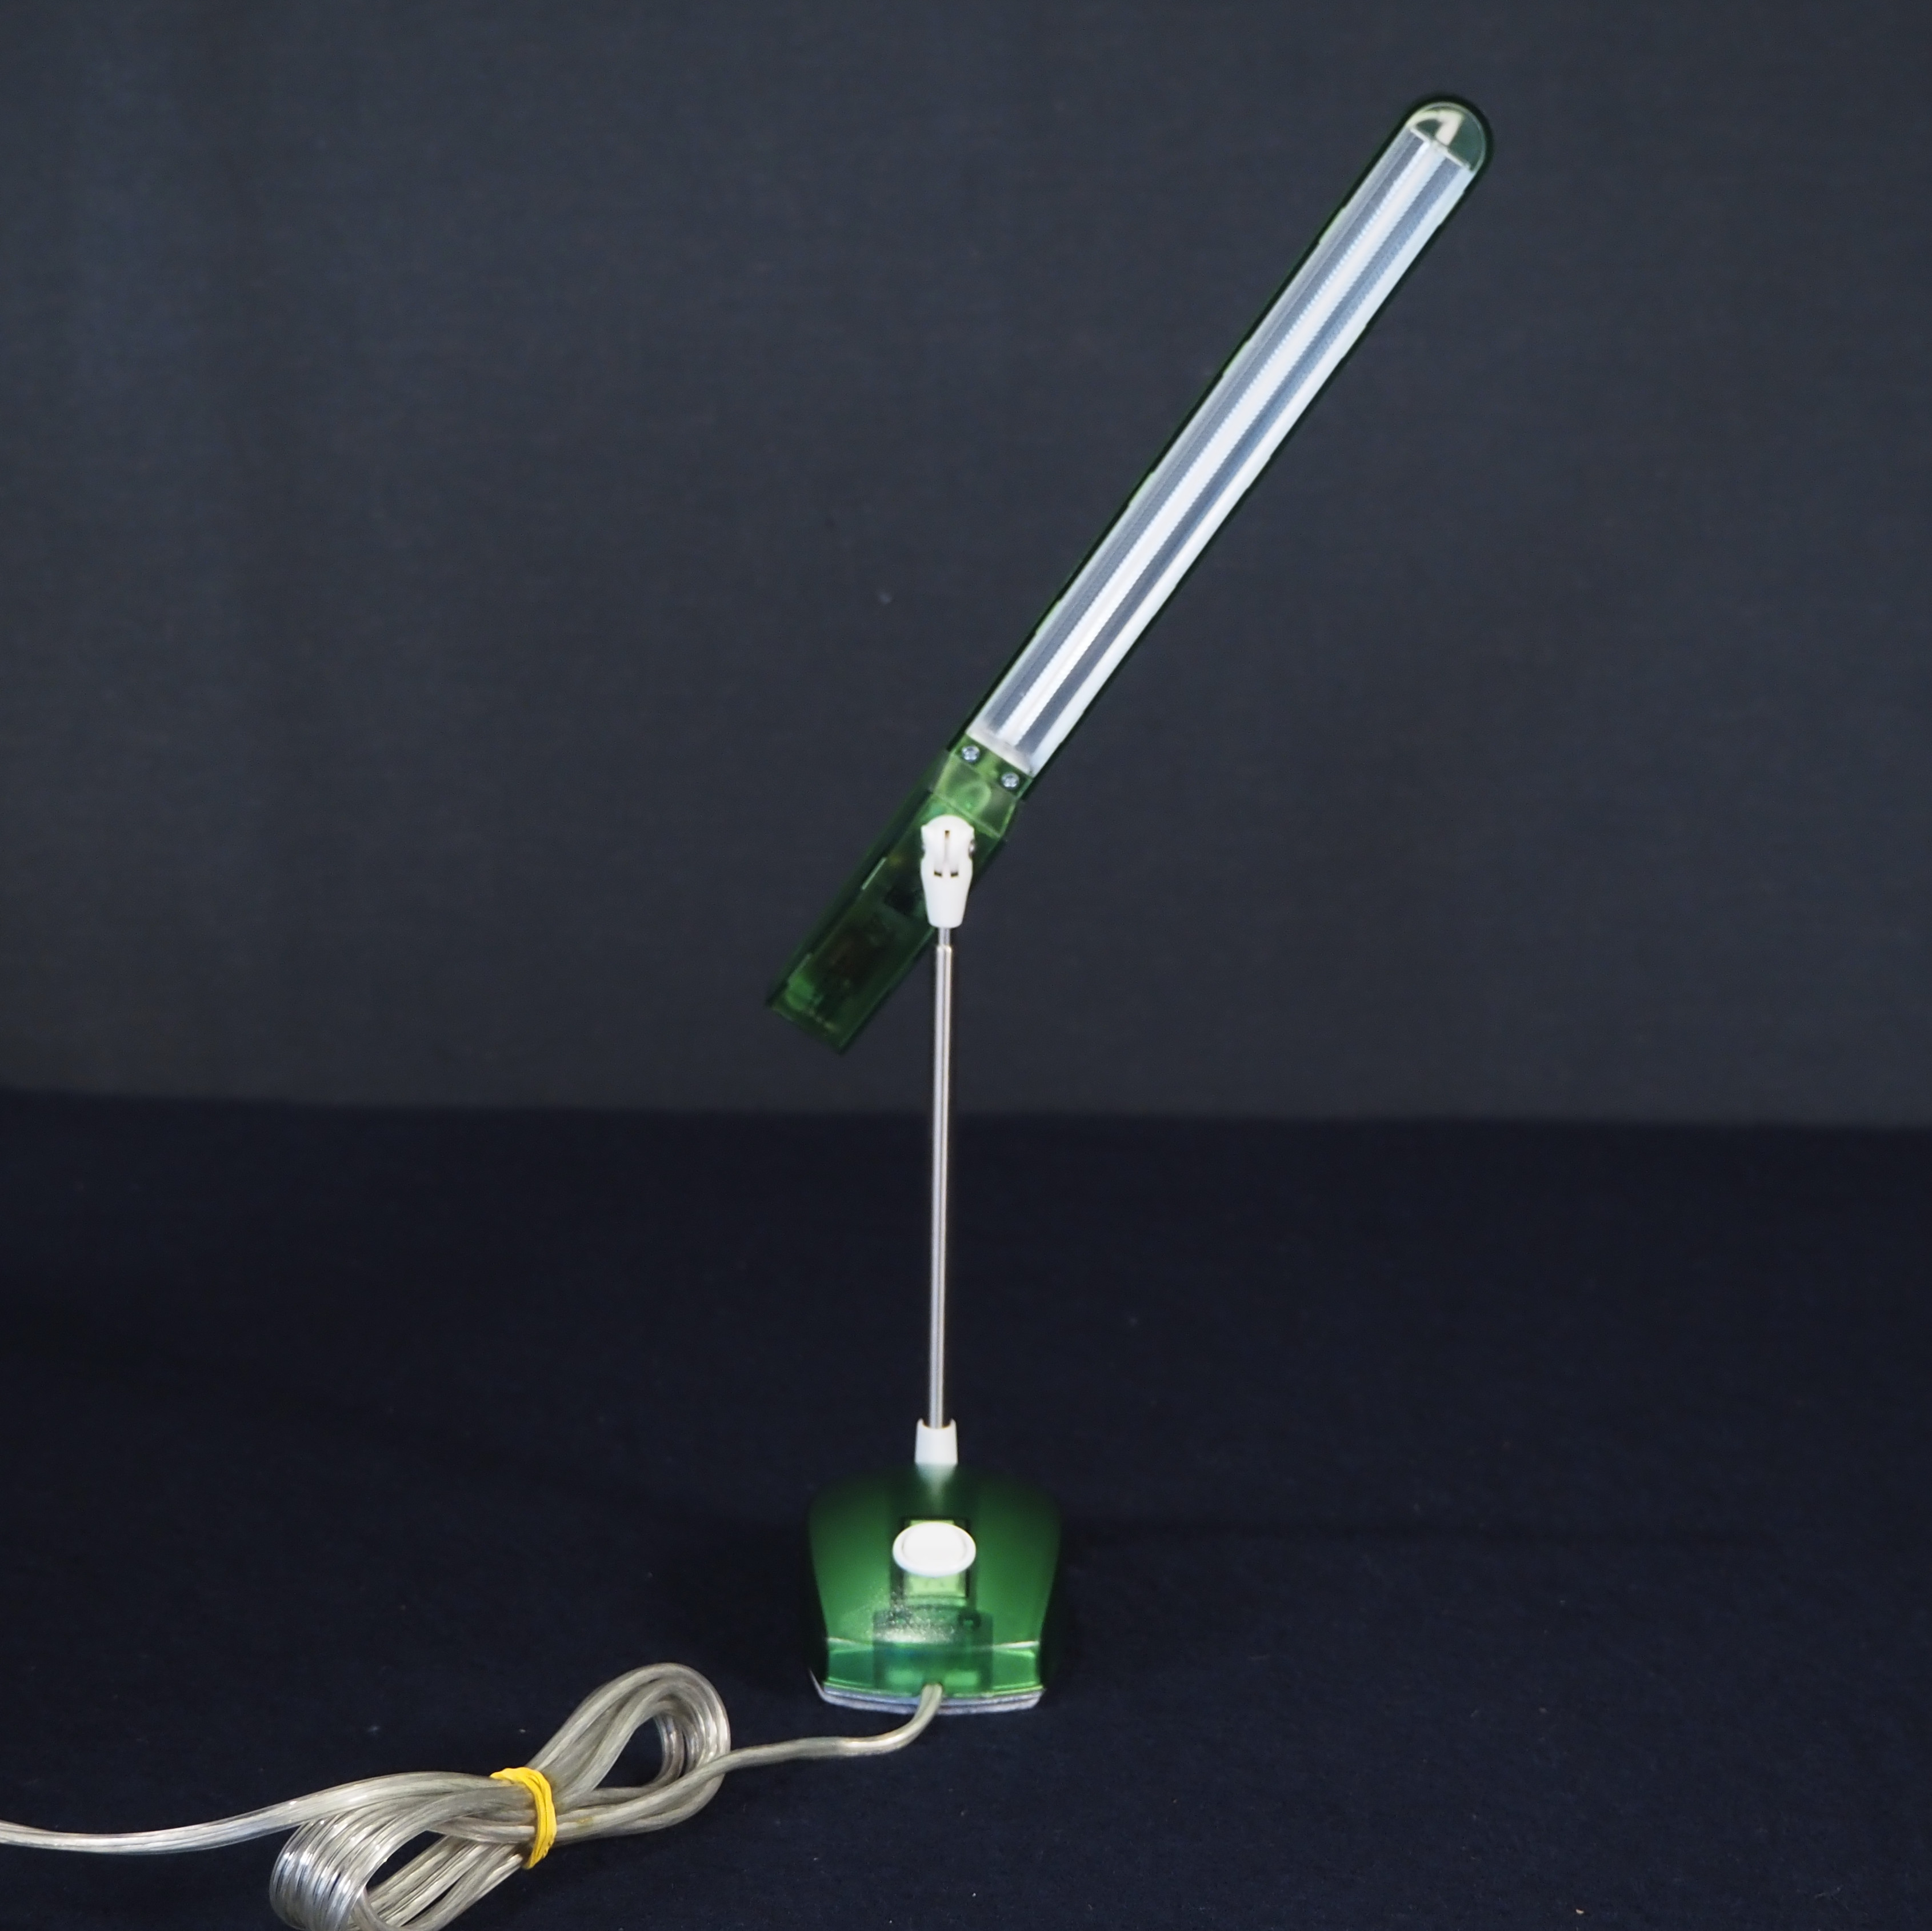 Table light 'Mircolight' by Ernesto Gismondi for Artemide (ca. 1990) - Green